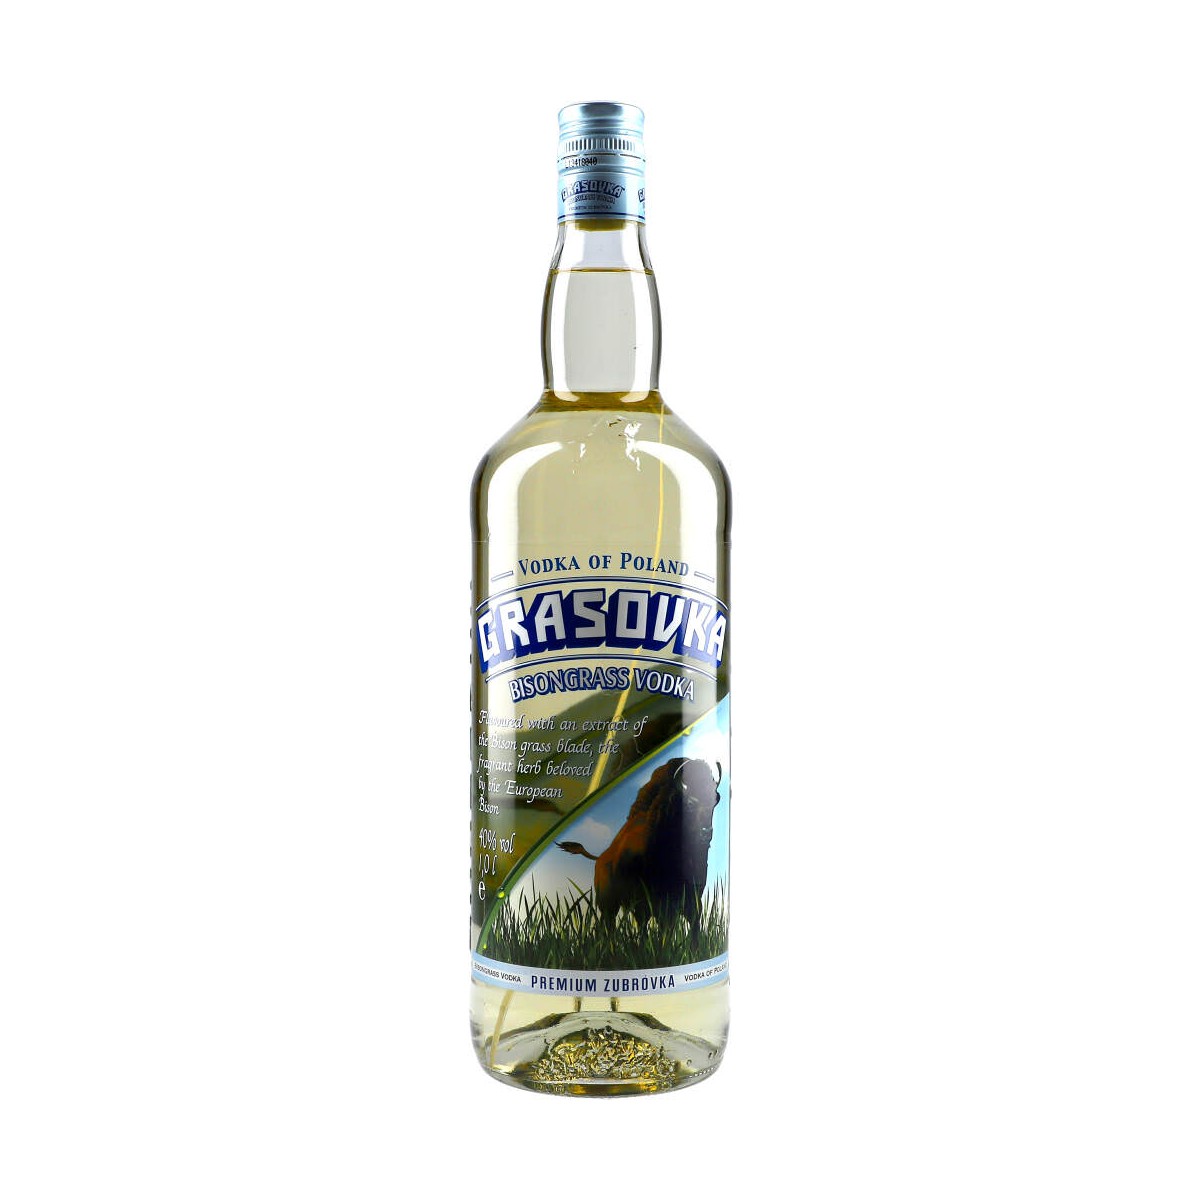 100cl Grasovka 38% Bisongrass Vodka